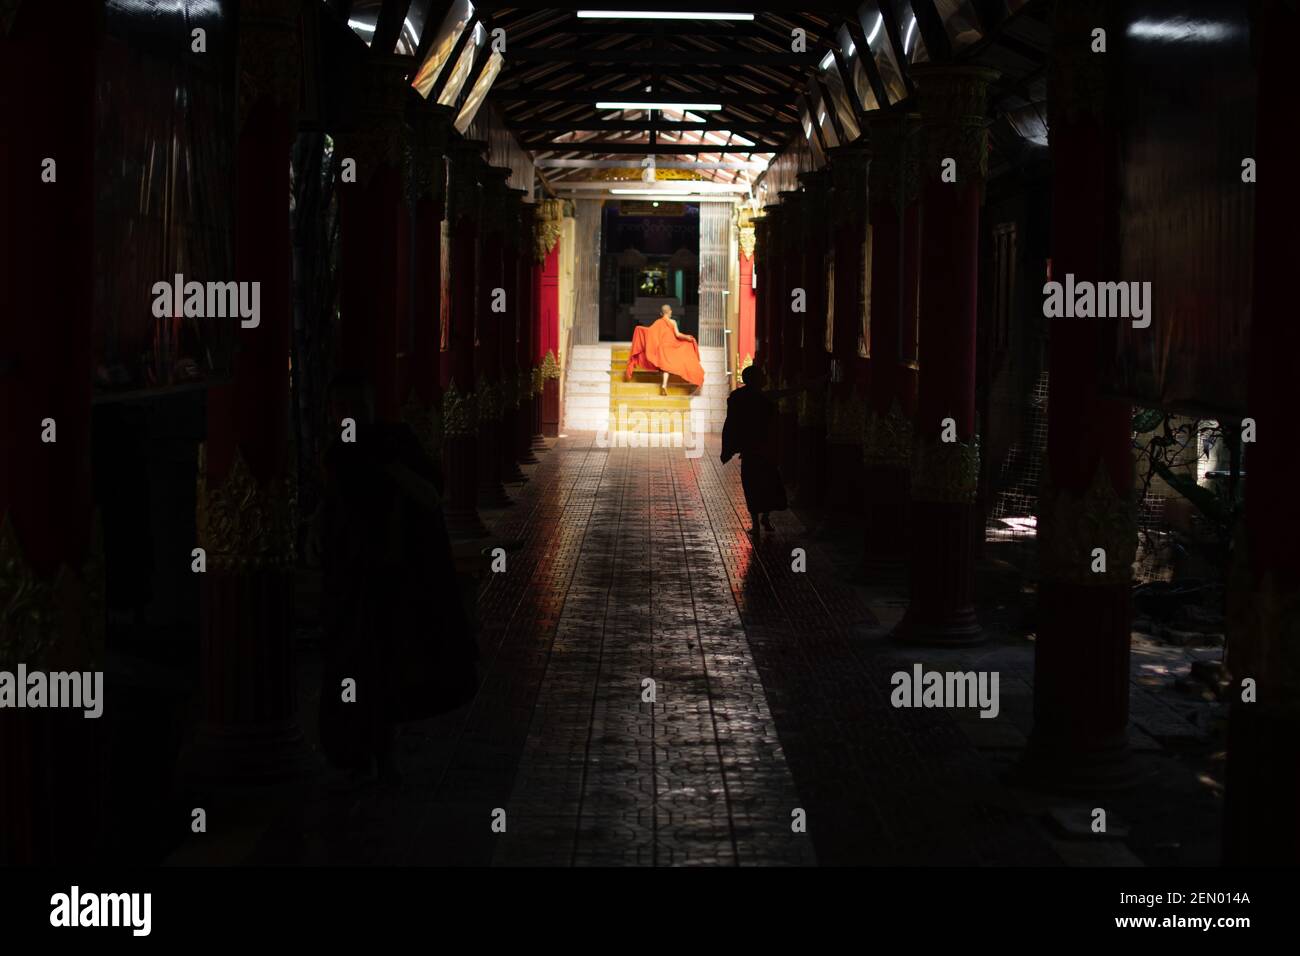 YANGON, MYANMAR - JANUAR 1 2020: Ein junger Mönch, der die traditionelle orangefarbene Robe fixiert, während er im Sonnenschein einen langen dunklen Gehweg hinuntergeht Stockfoto